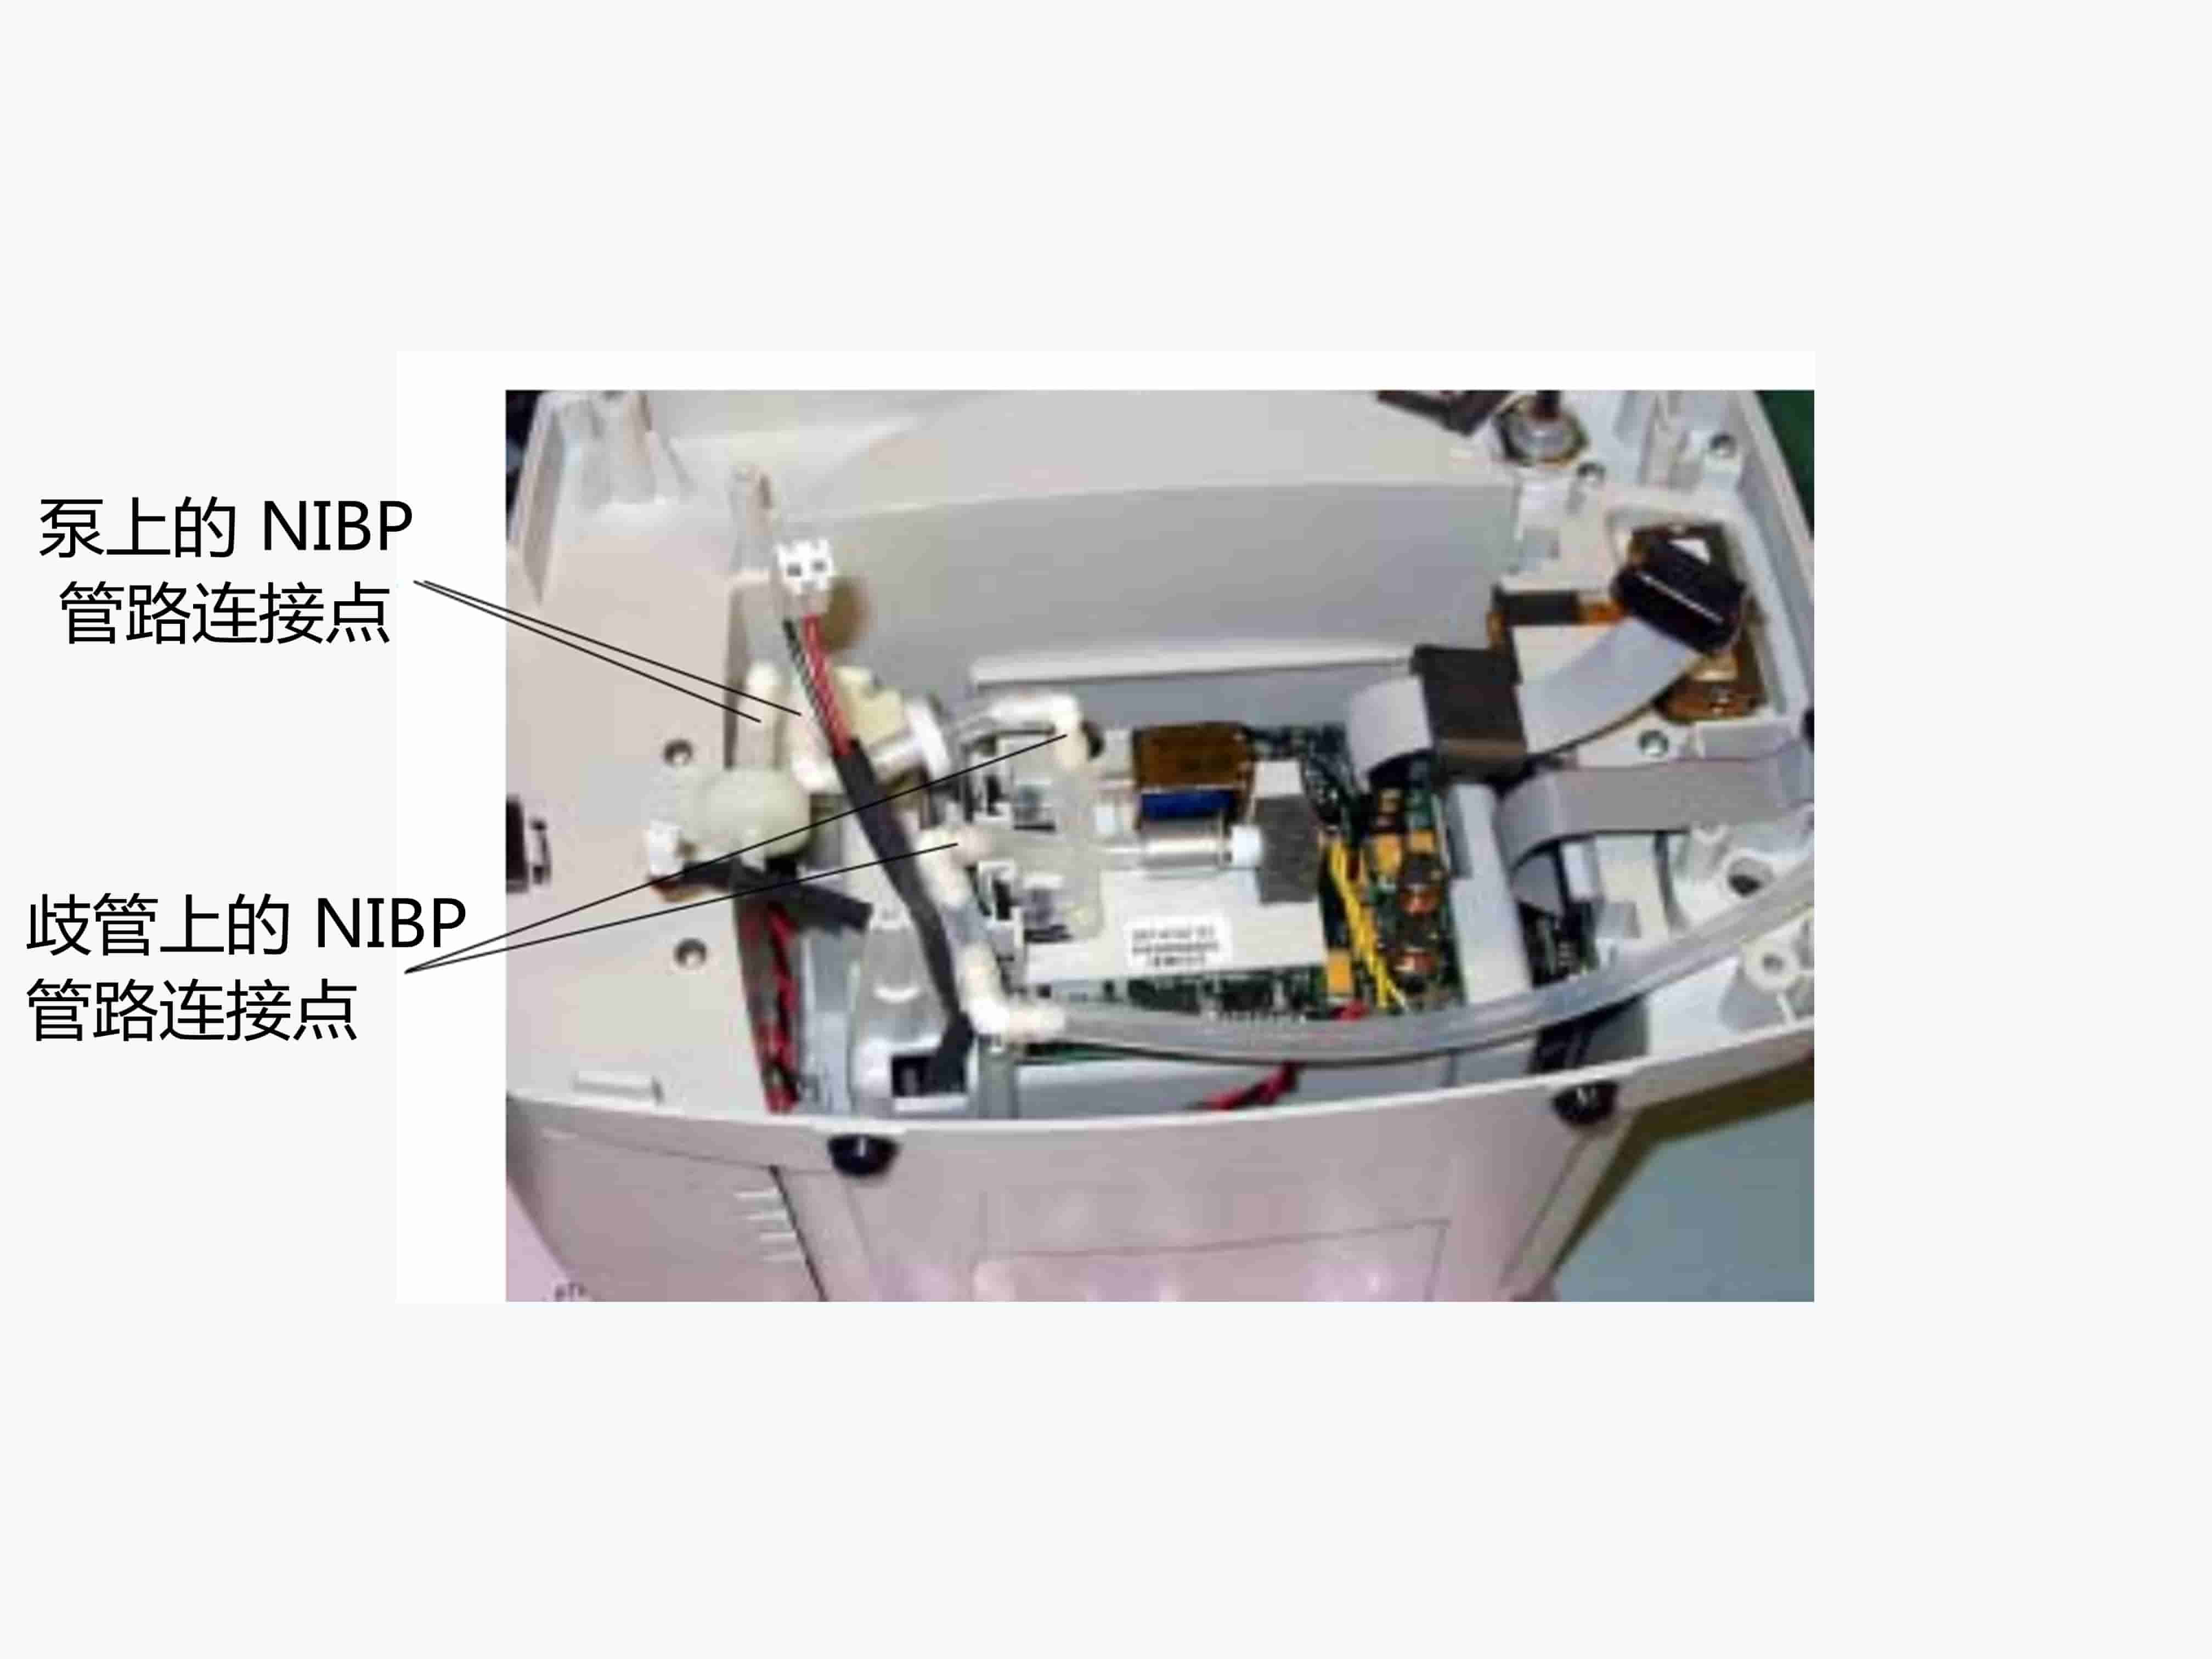 伟伦300系列NIBP模块